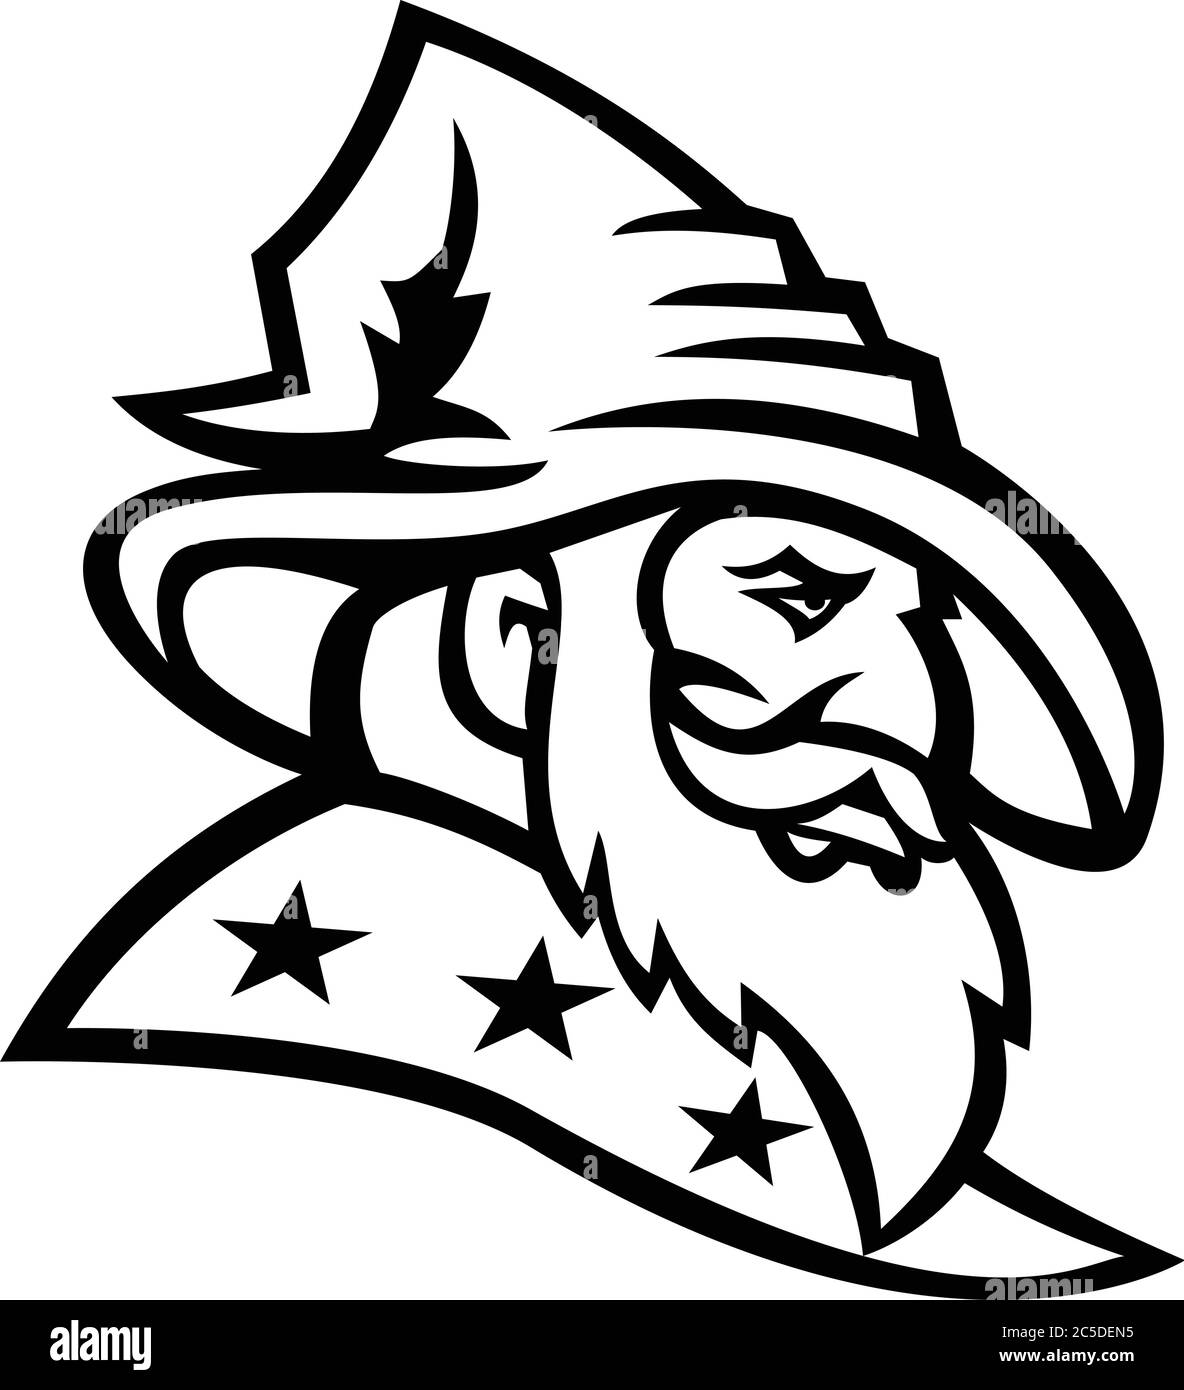 Mascot nero e bianco illustrazione di testa di un mago, di un warlock, di un mago o stregone con tre stelle sul suo mantello o accappatoio visto da un lato su isola Illustrazione Vettoriale